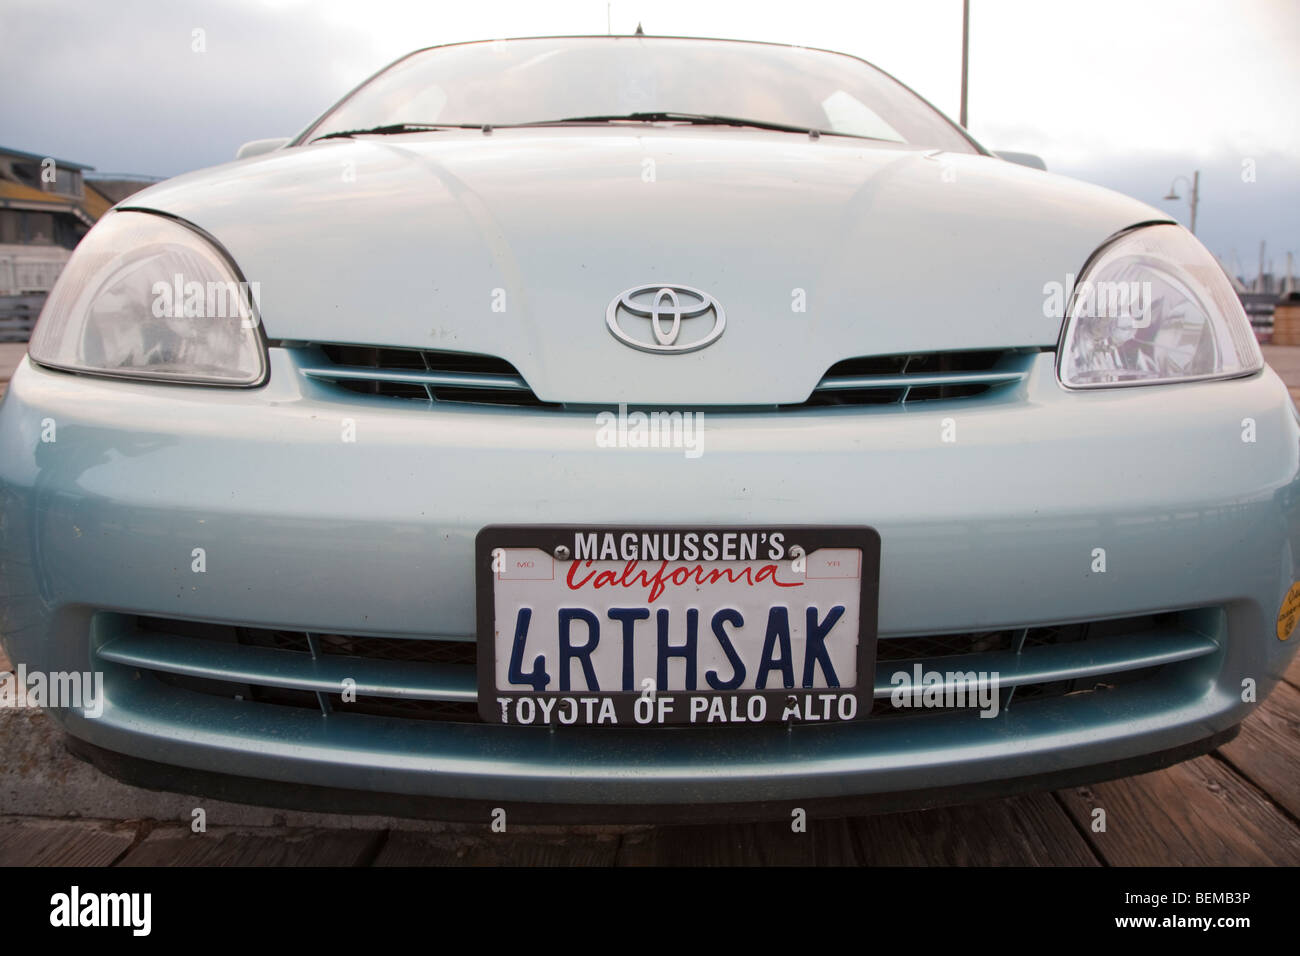 Vorderansicht des "4RTHSAK" (der Erde zuliebe) benutzerdefinierte Platte auf einem grauen Toyota Prius Hybrid-Auto. Kalifornien, USA Stockfoto